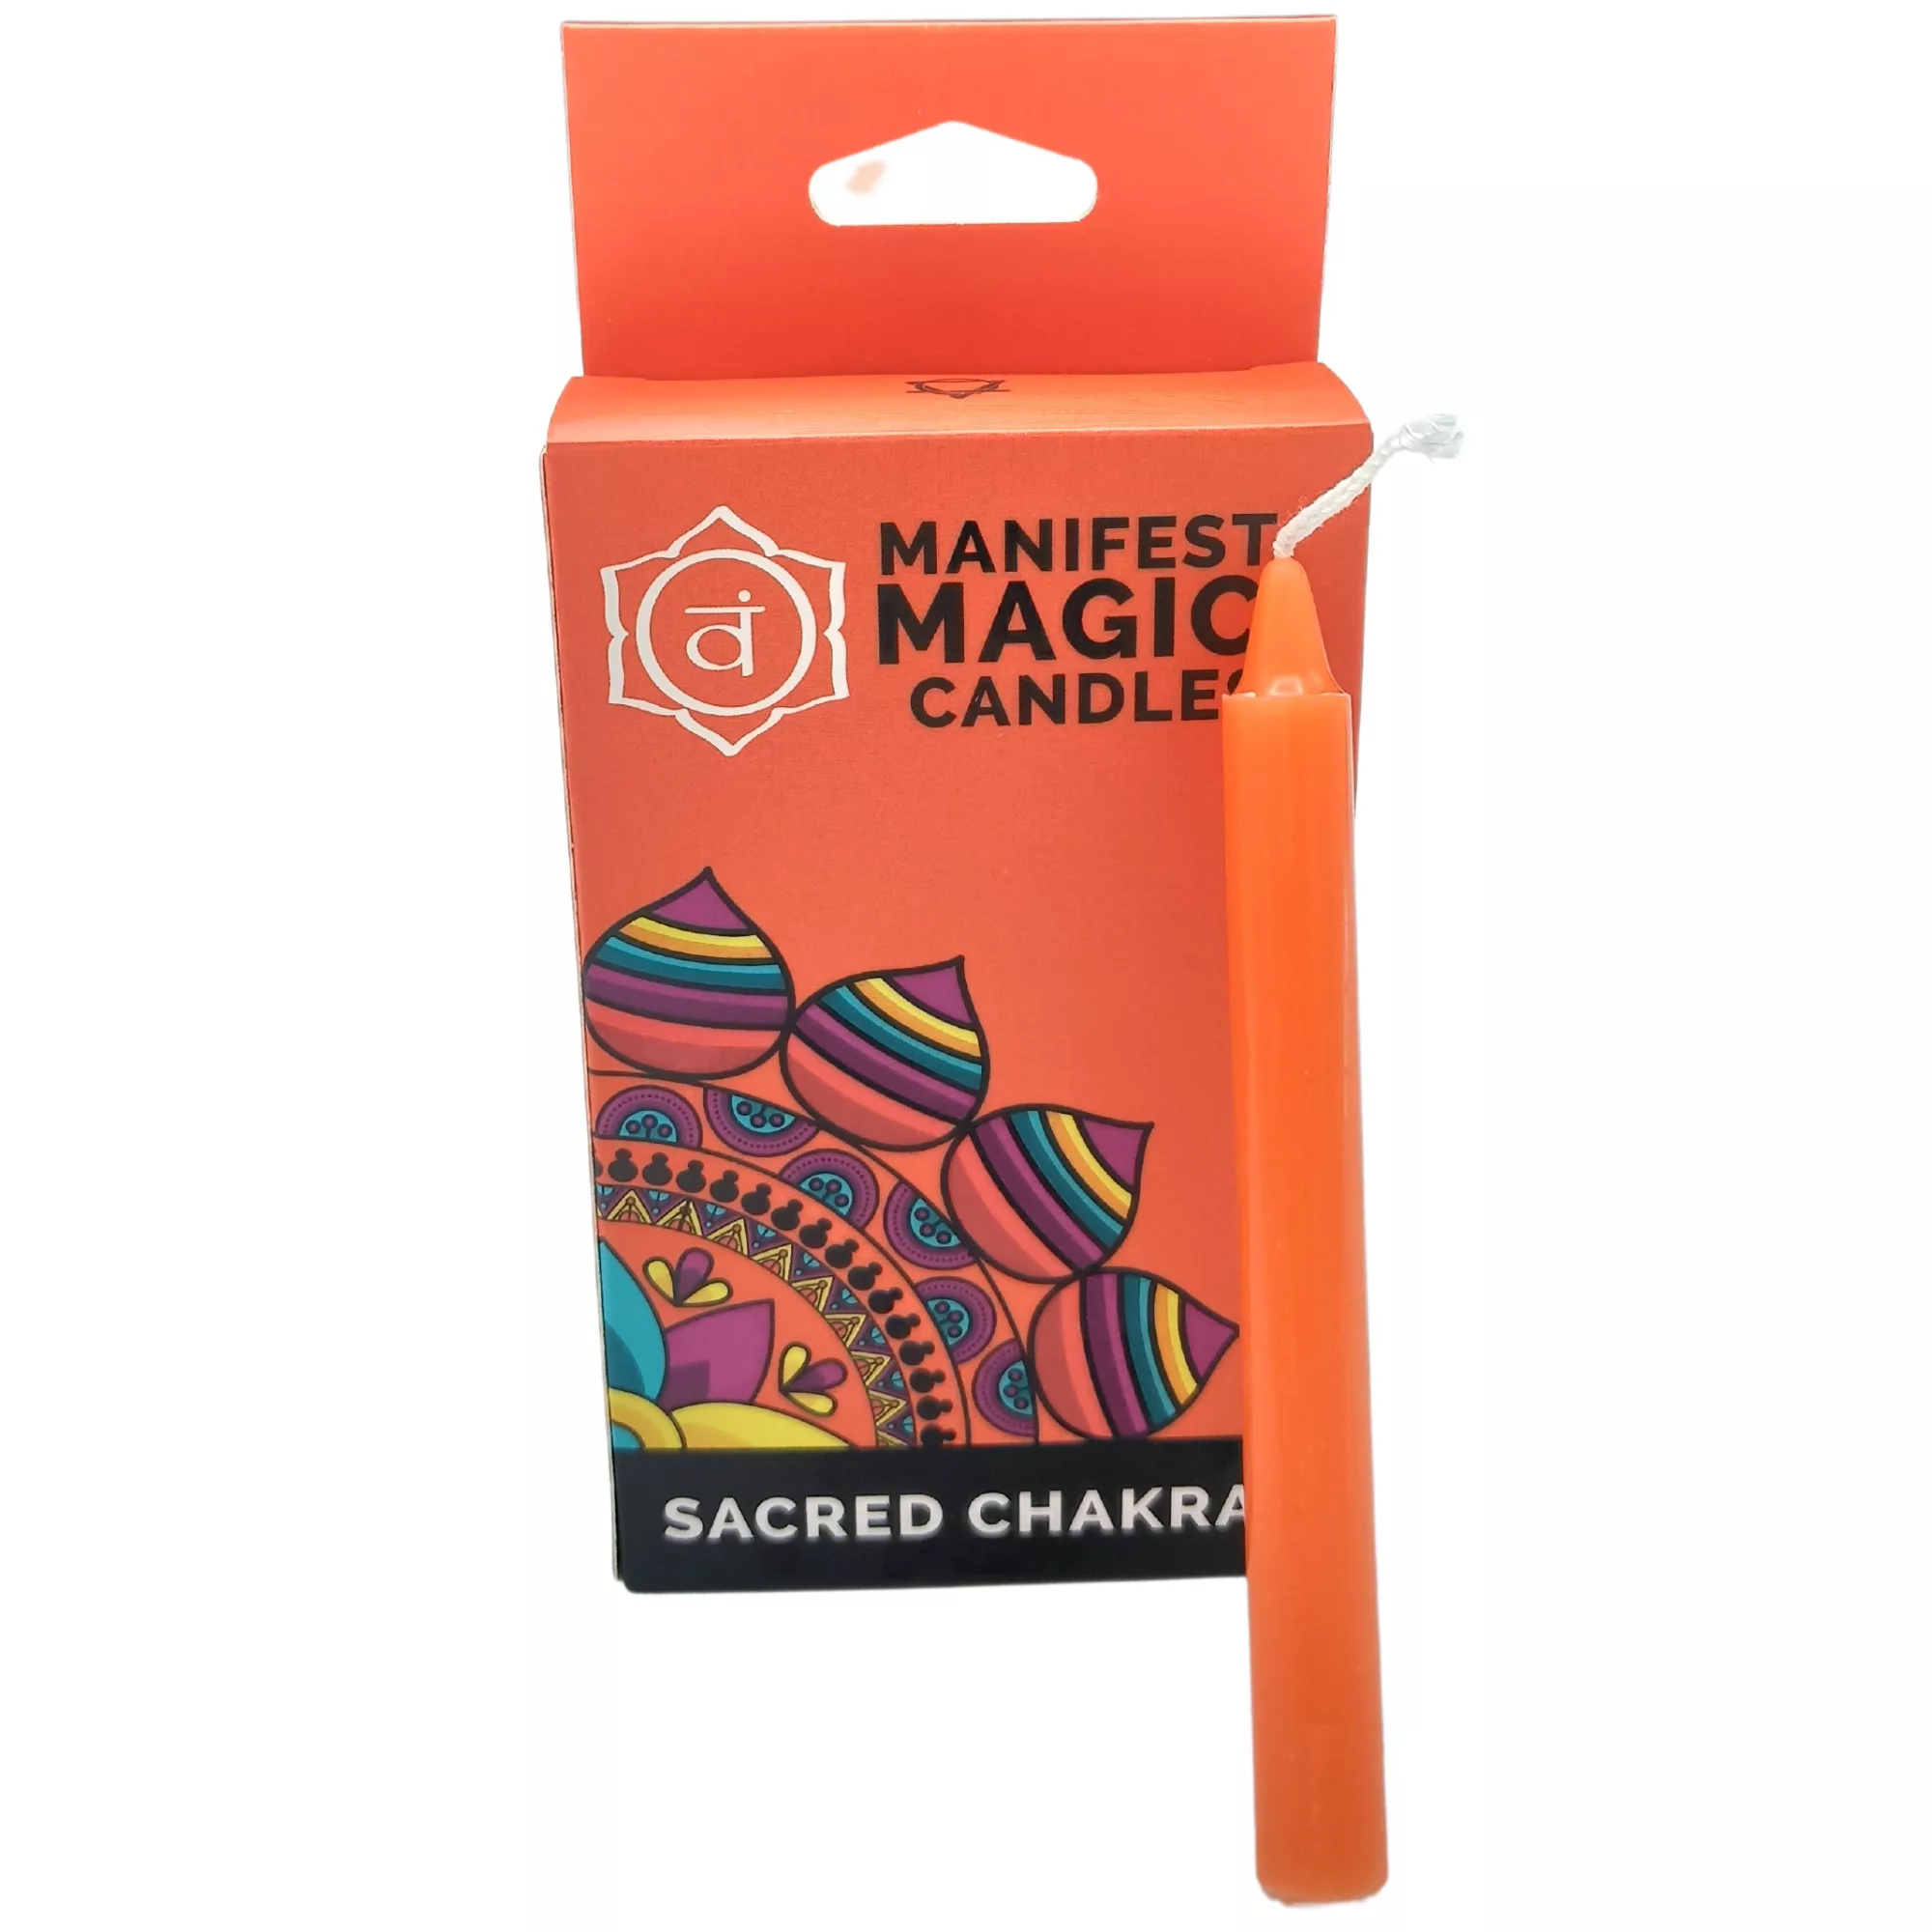 Manifest Magic Candles (pack of 12) – Orange – Sacred Chakra